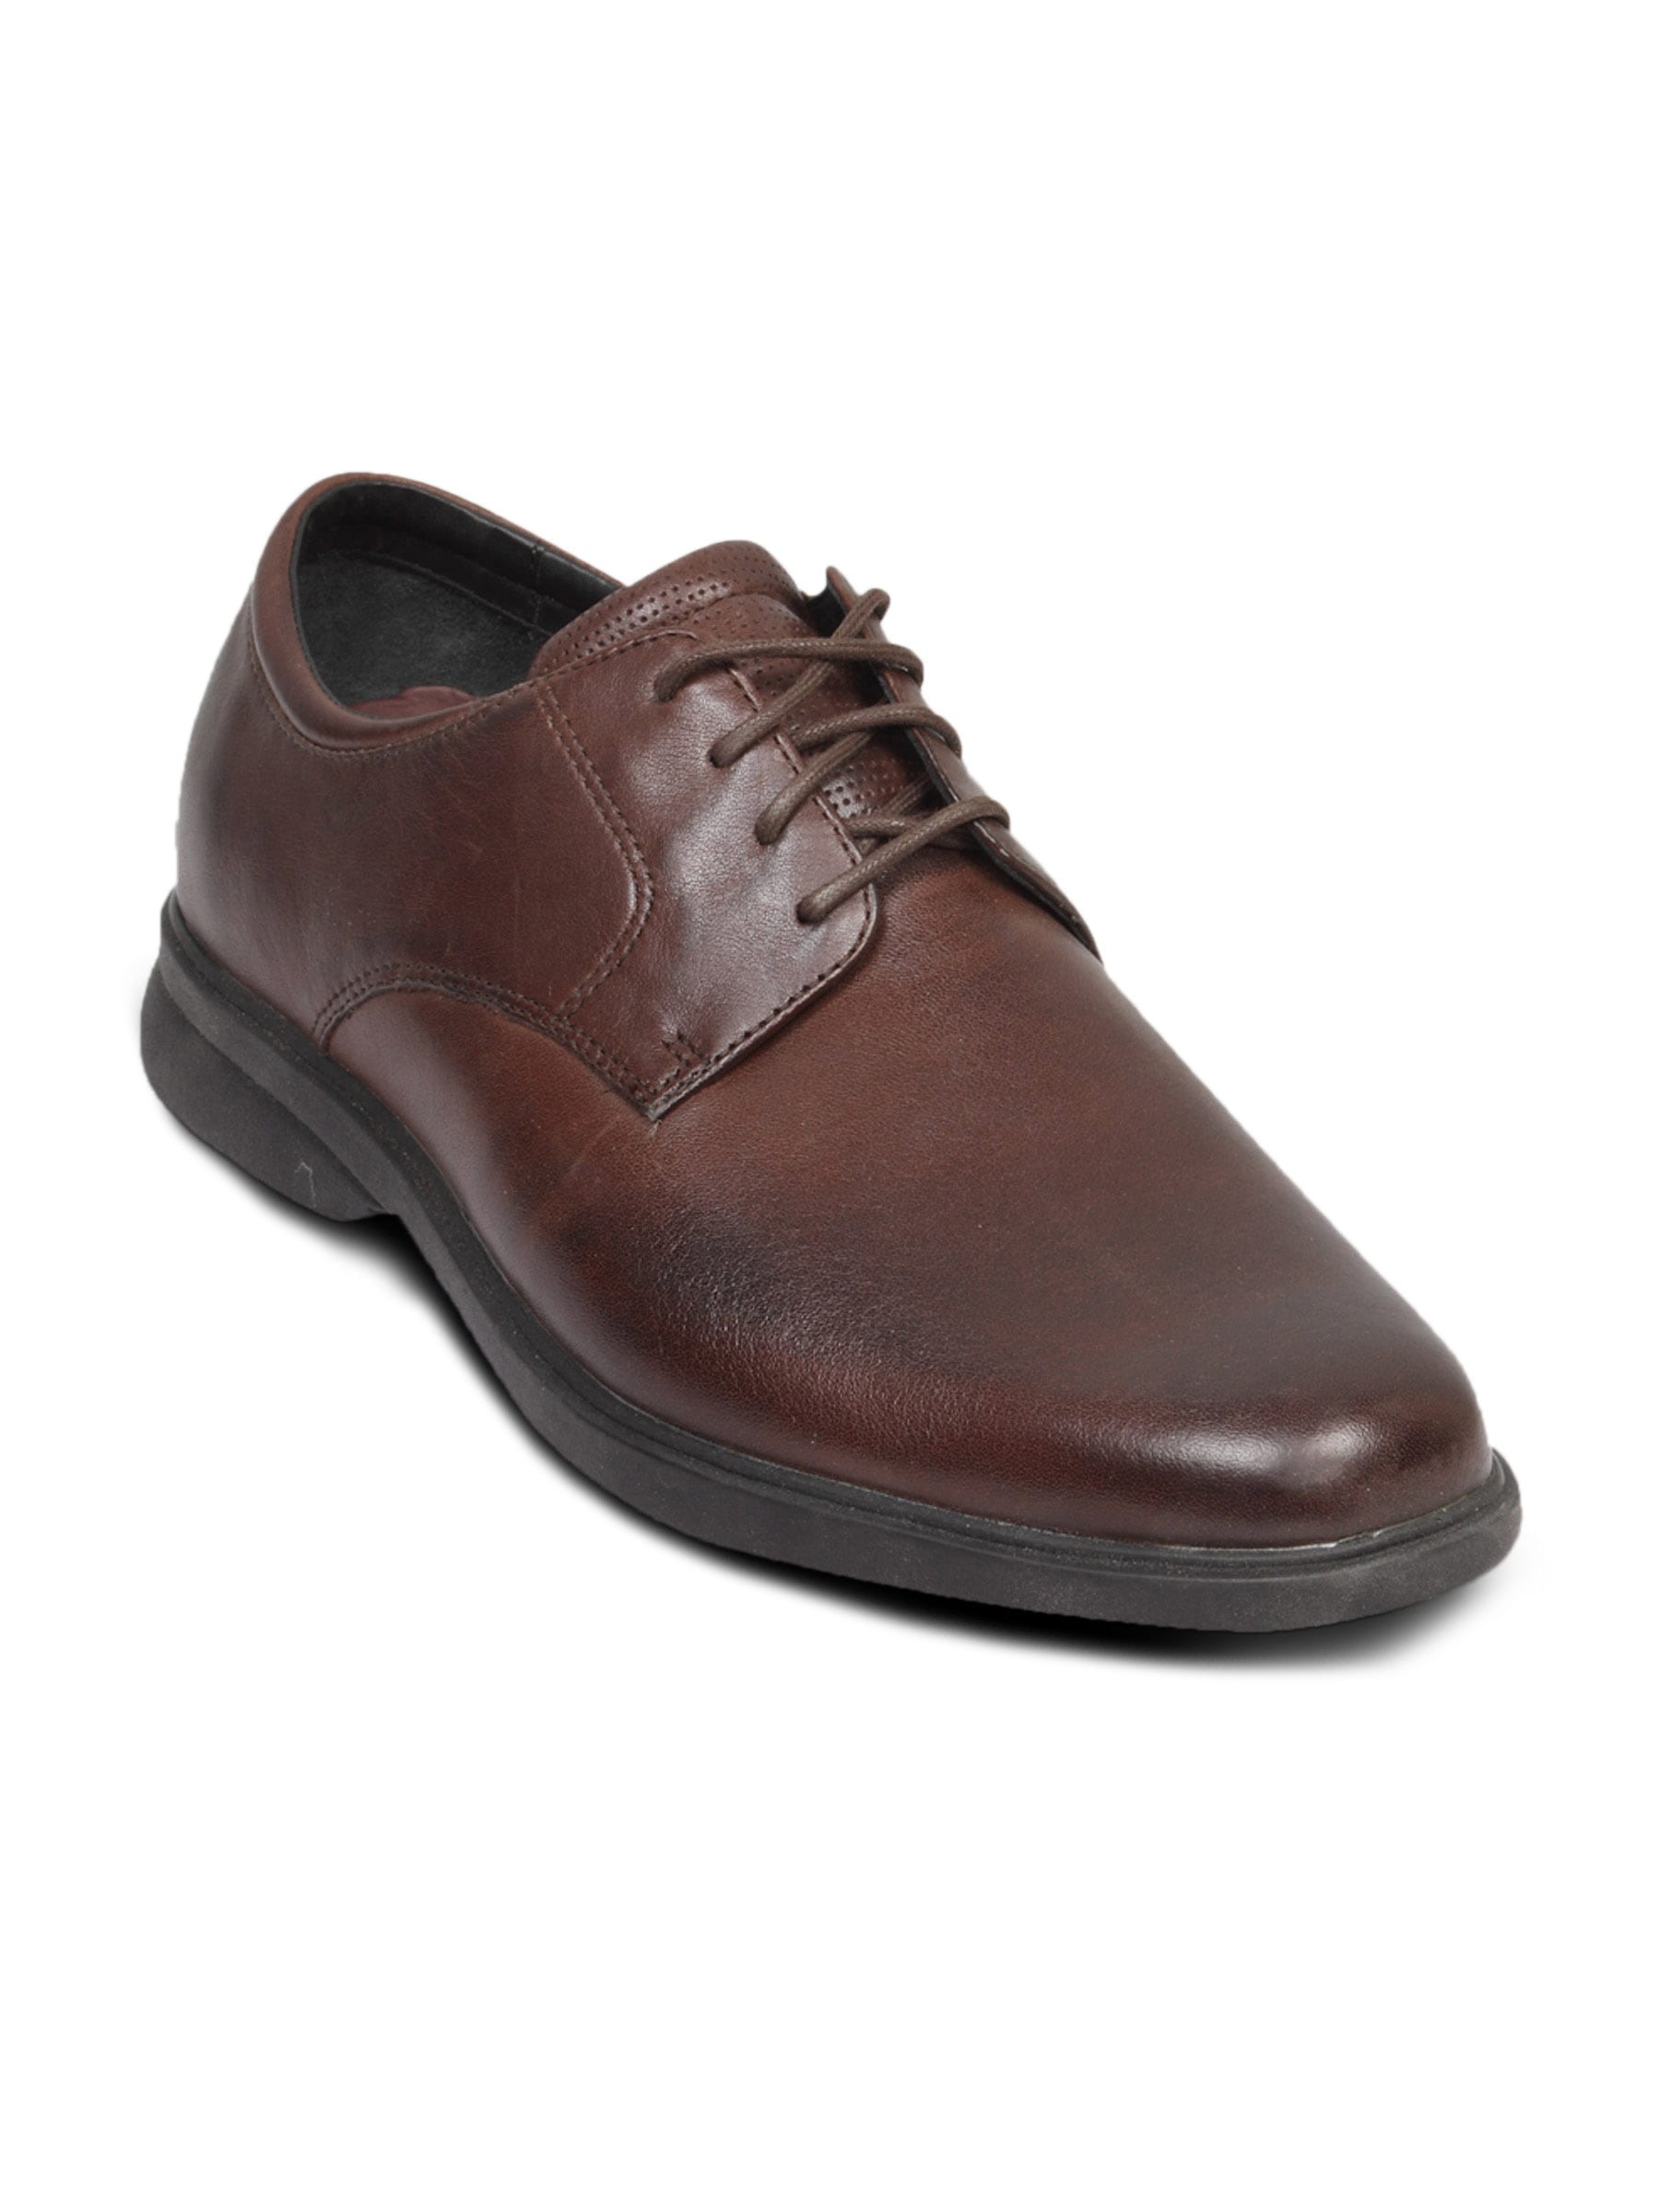 Rockport Men's Allender Brown Shoe